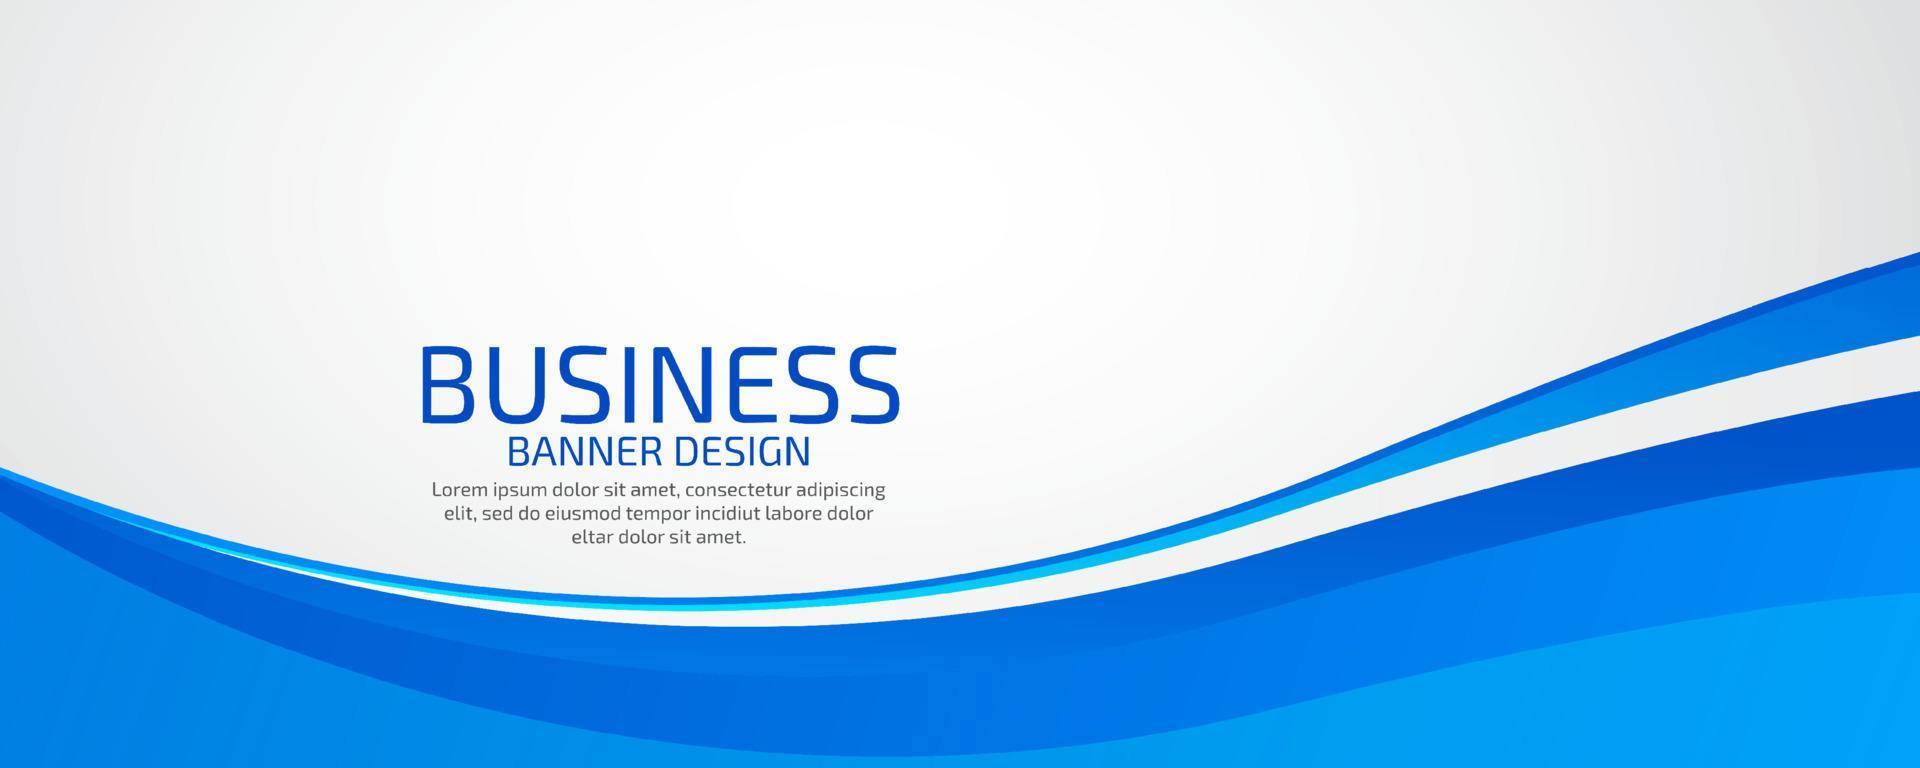 moderno negocio presentación modelo. ondulado estilo marco diseño. vector